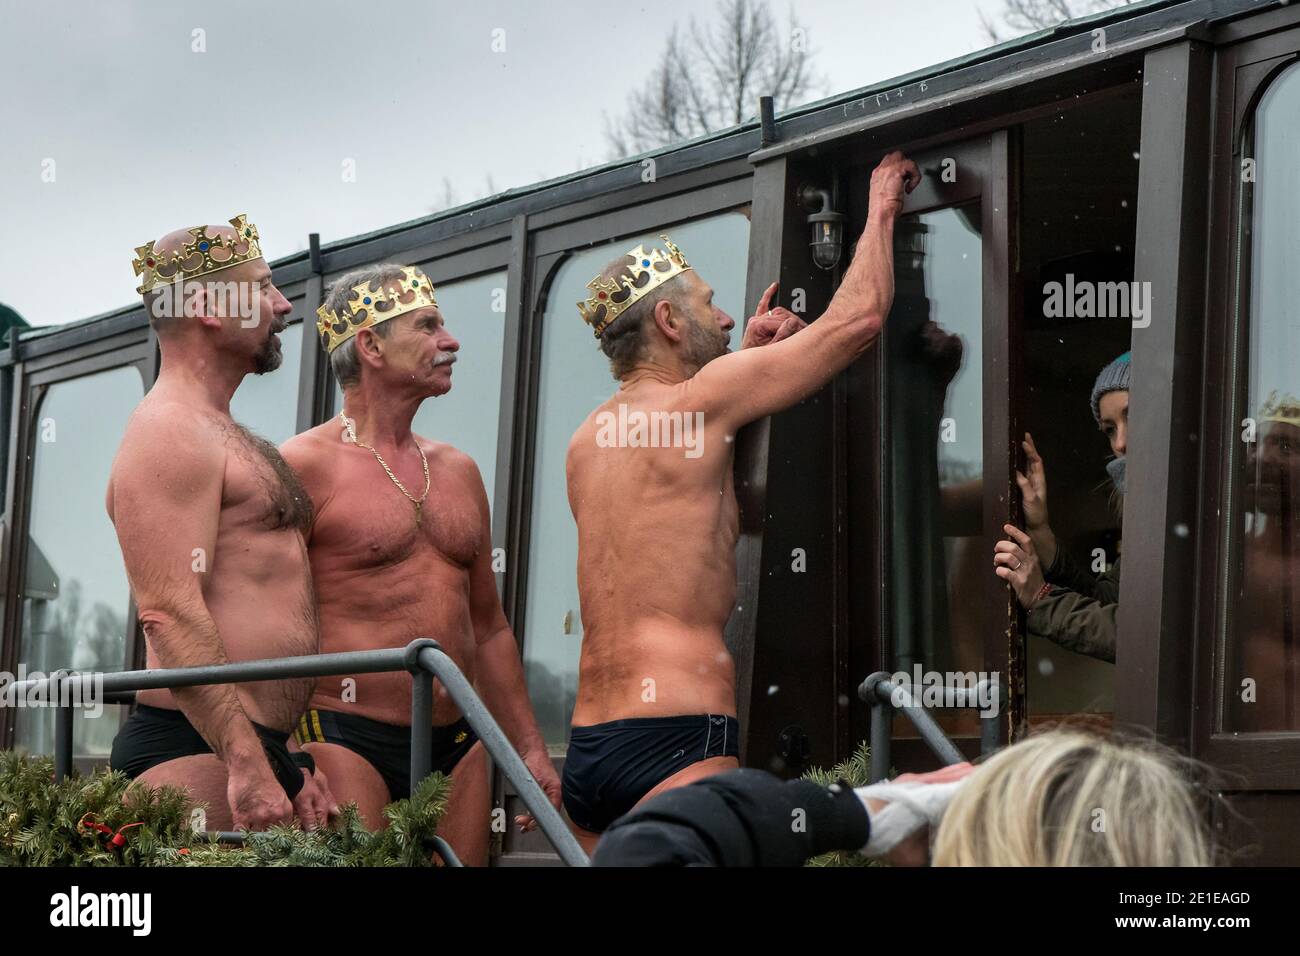 PRAGUE - 6 janvier : trois nageurs endurcis posent comme 3 rois le 6 janvier 2021 au quai de Prague à Venise, Prague, République tchèque. Nage traditionnelle à la mi-journée Banque D'Images